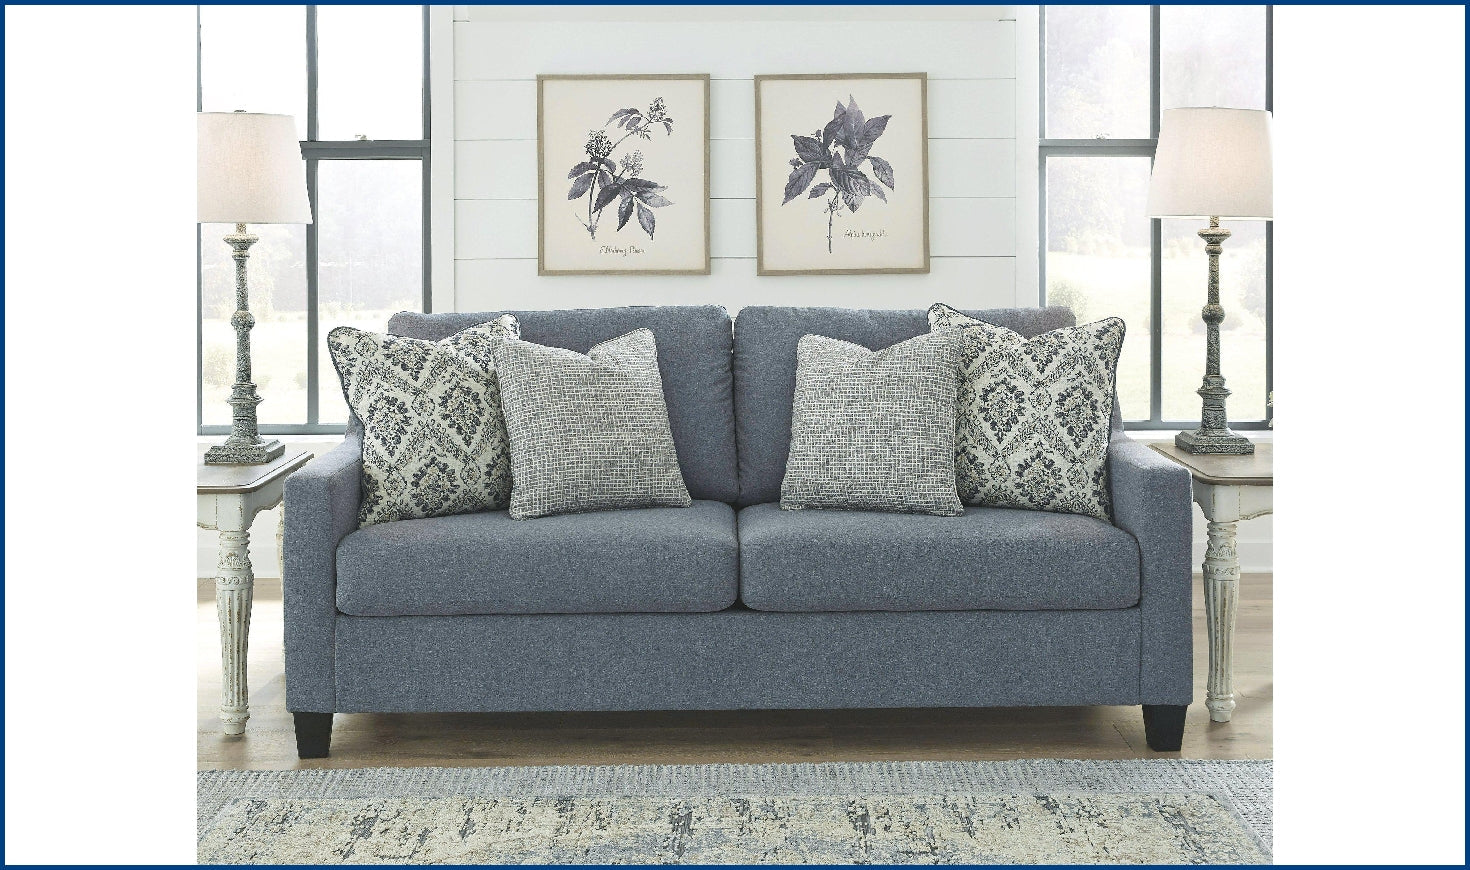 Lemly Living room set-Living Room Sets-Jennifer Furniture